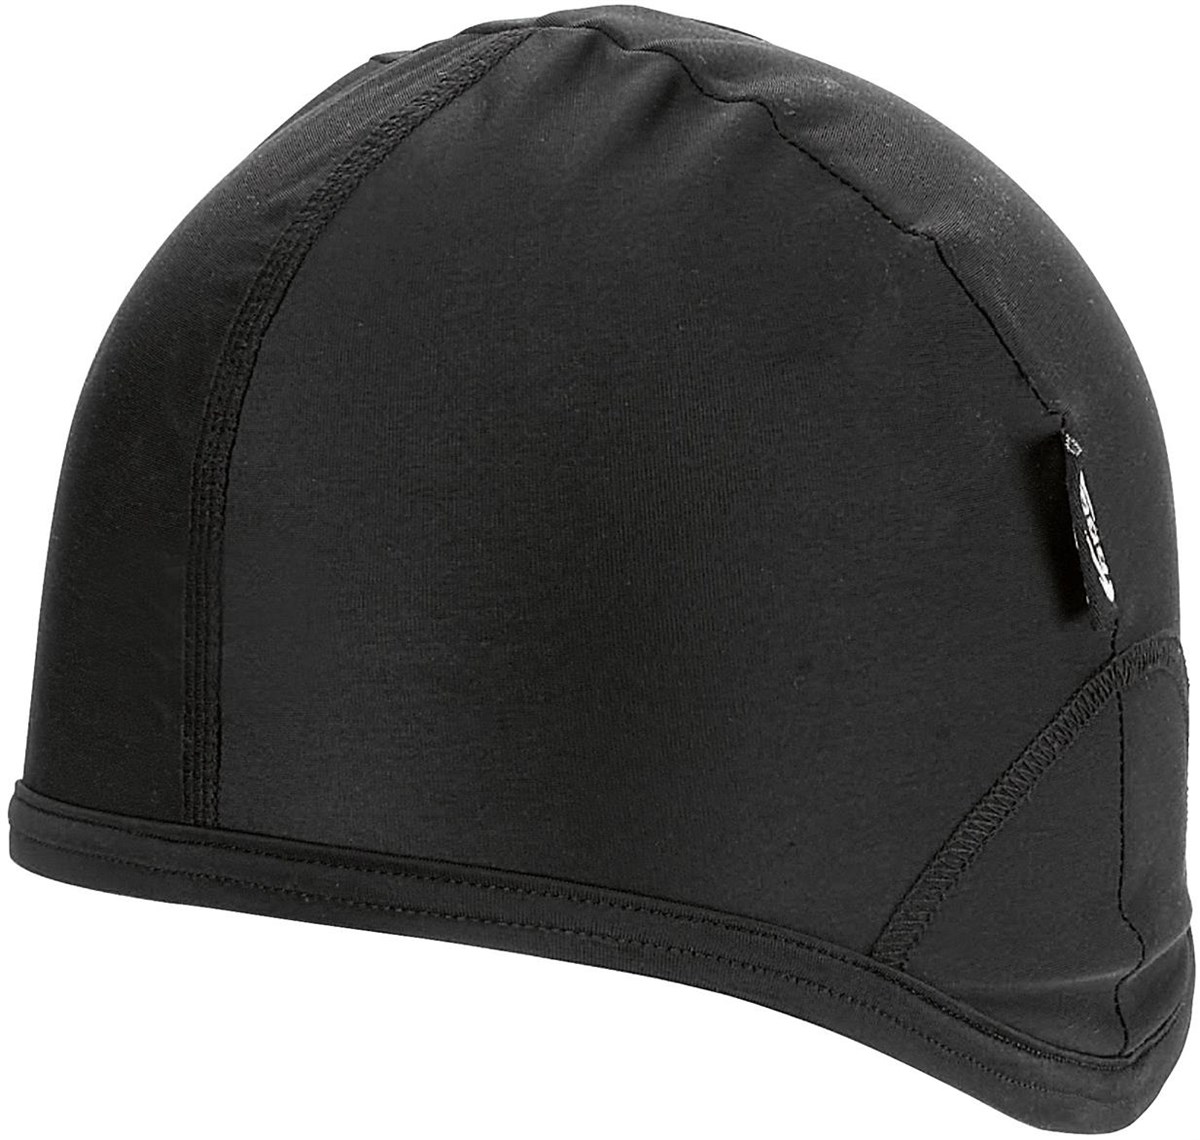 BBB BBW-97 - Winter Helmet Hat product image